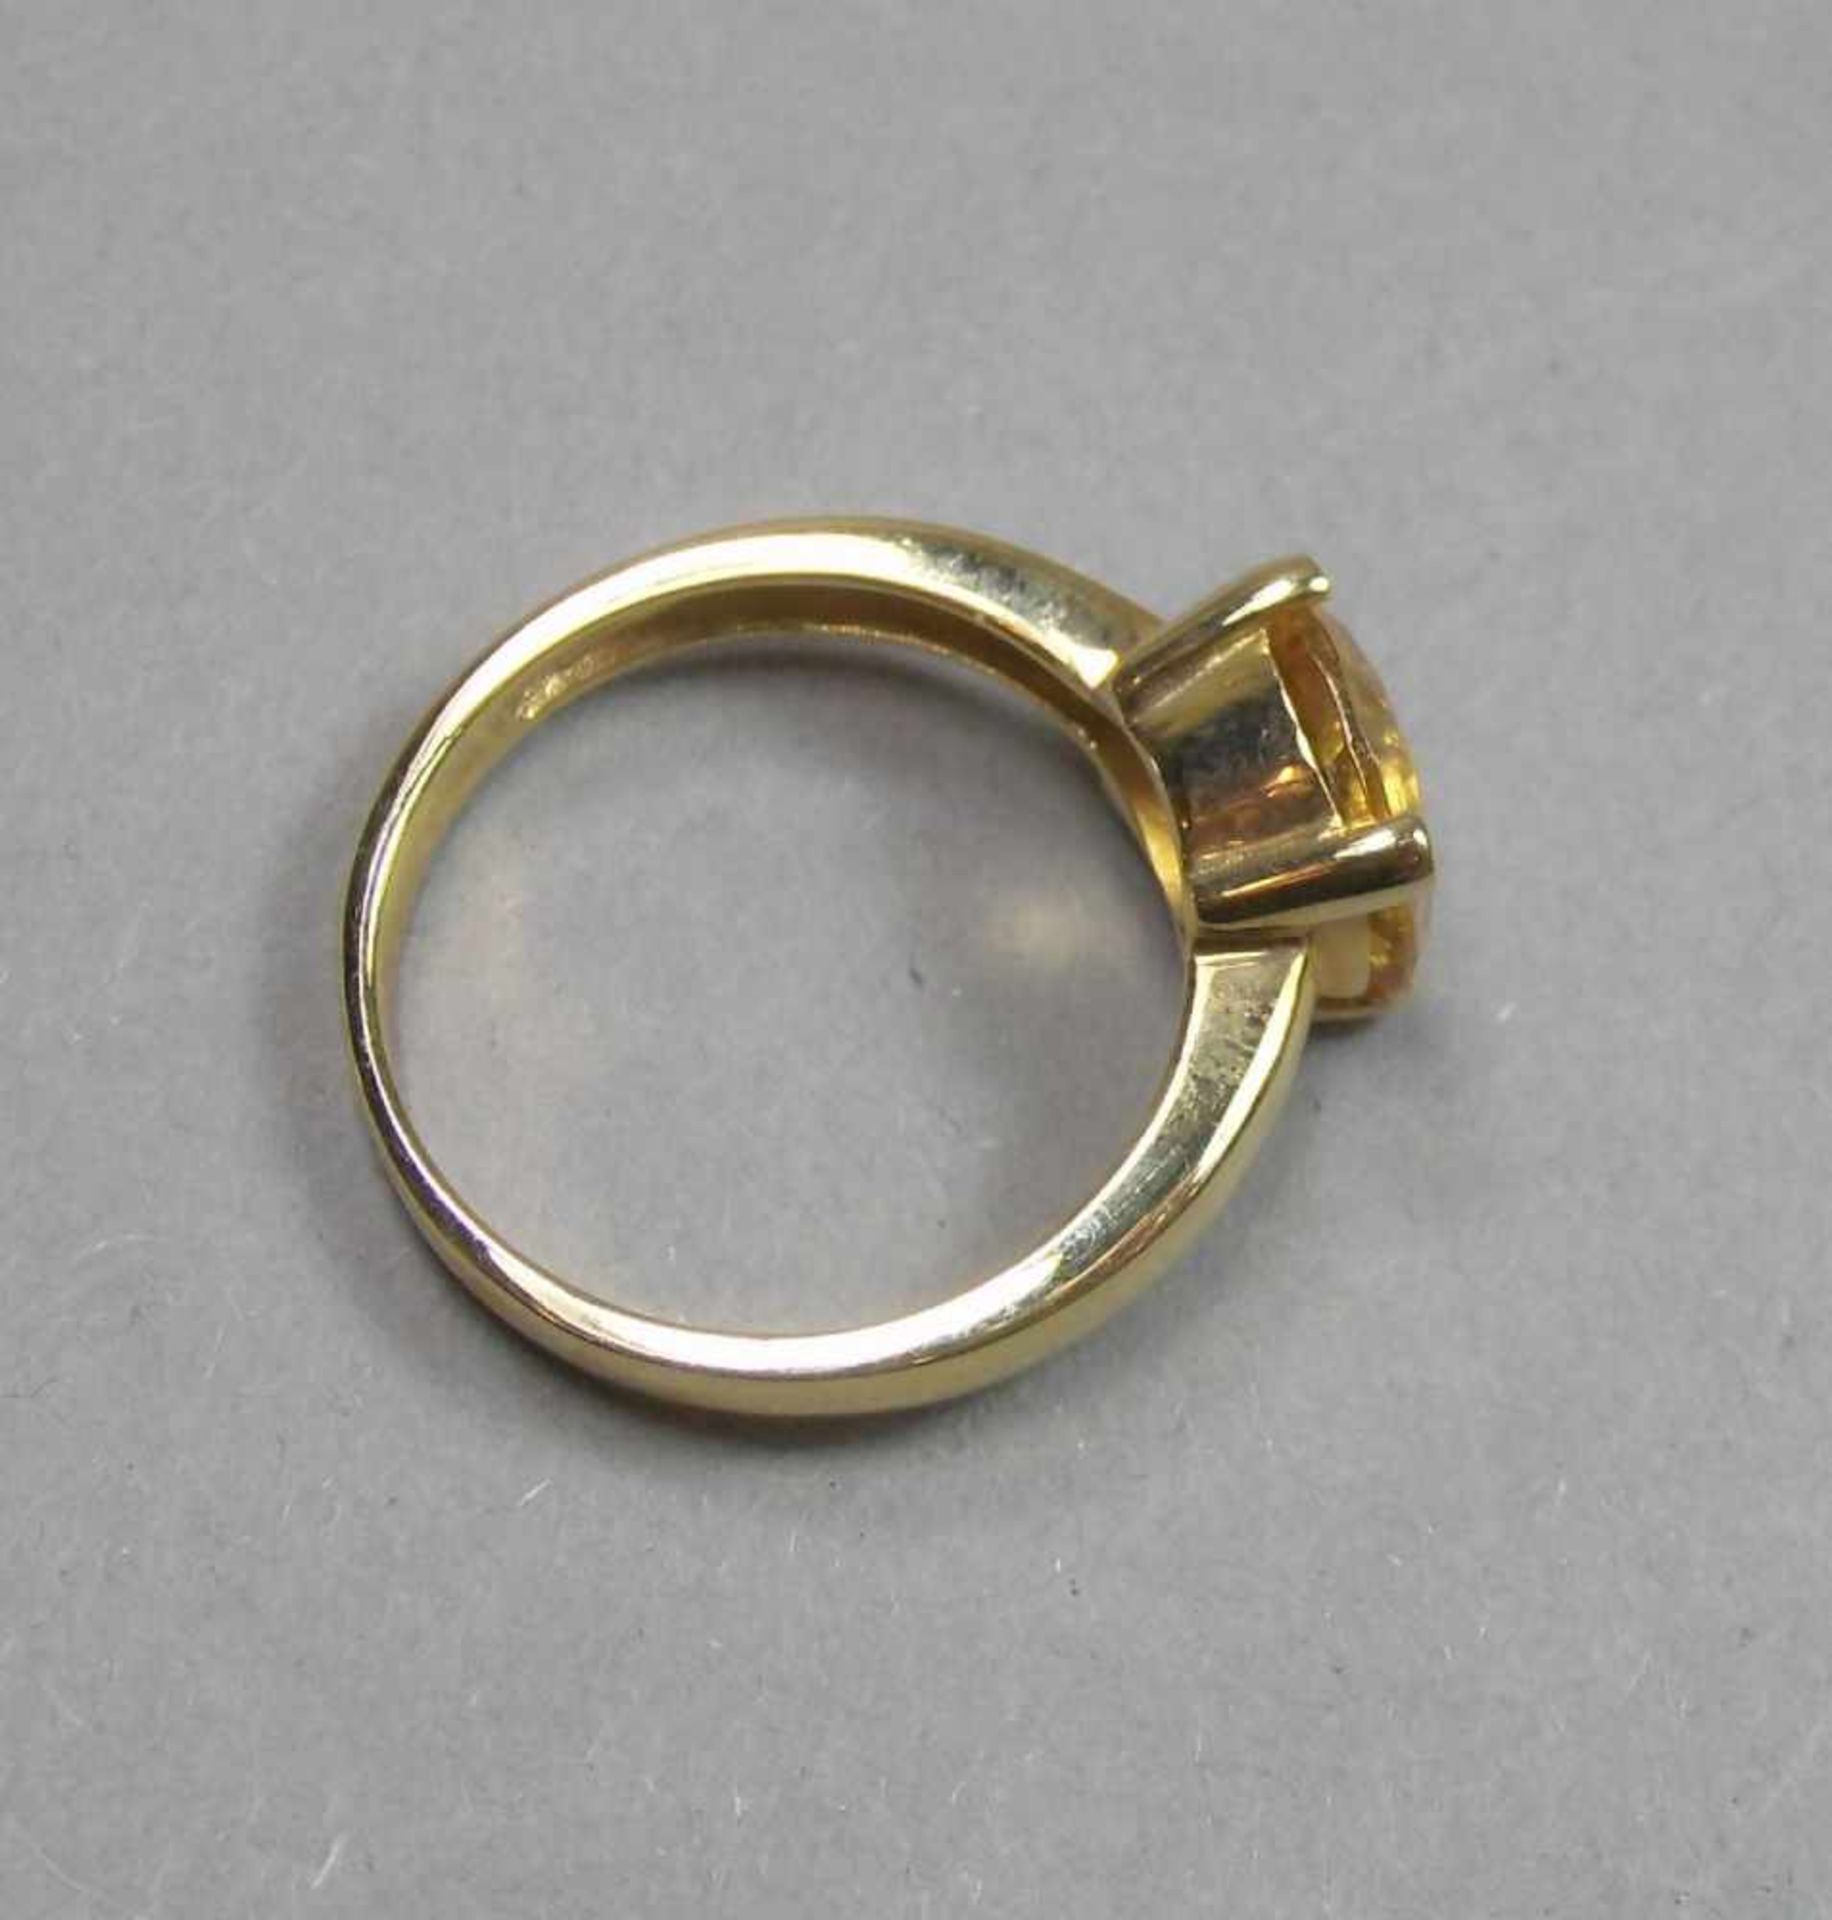 RING, 375er Gelbgold (3,8 g), besetzt mit einem Citrin. Ringkopfmaße: 1 x 1 cm, Ring-Gr. 57. - Bild 3 aus 4